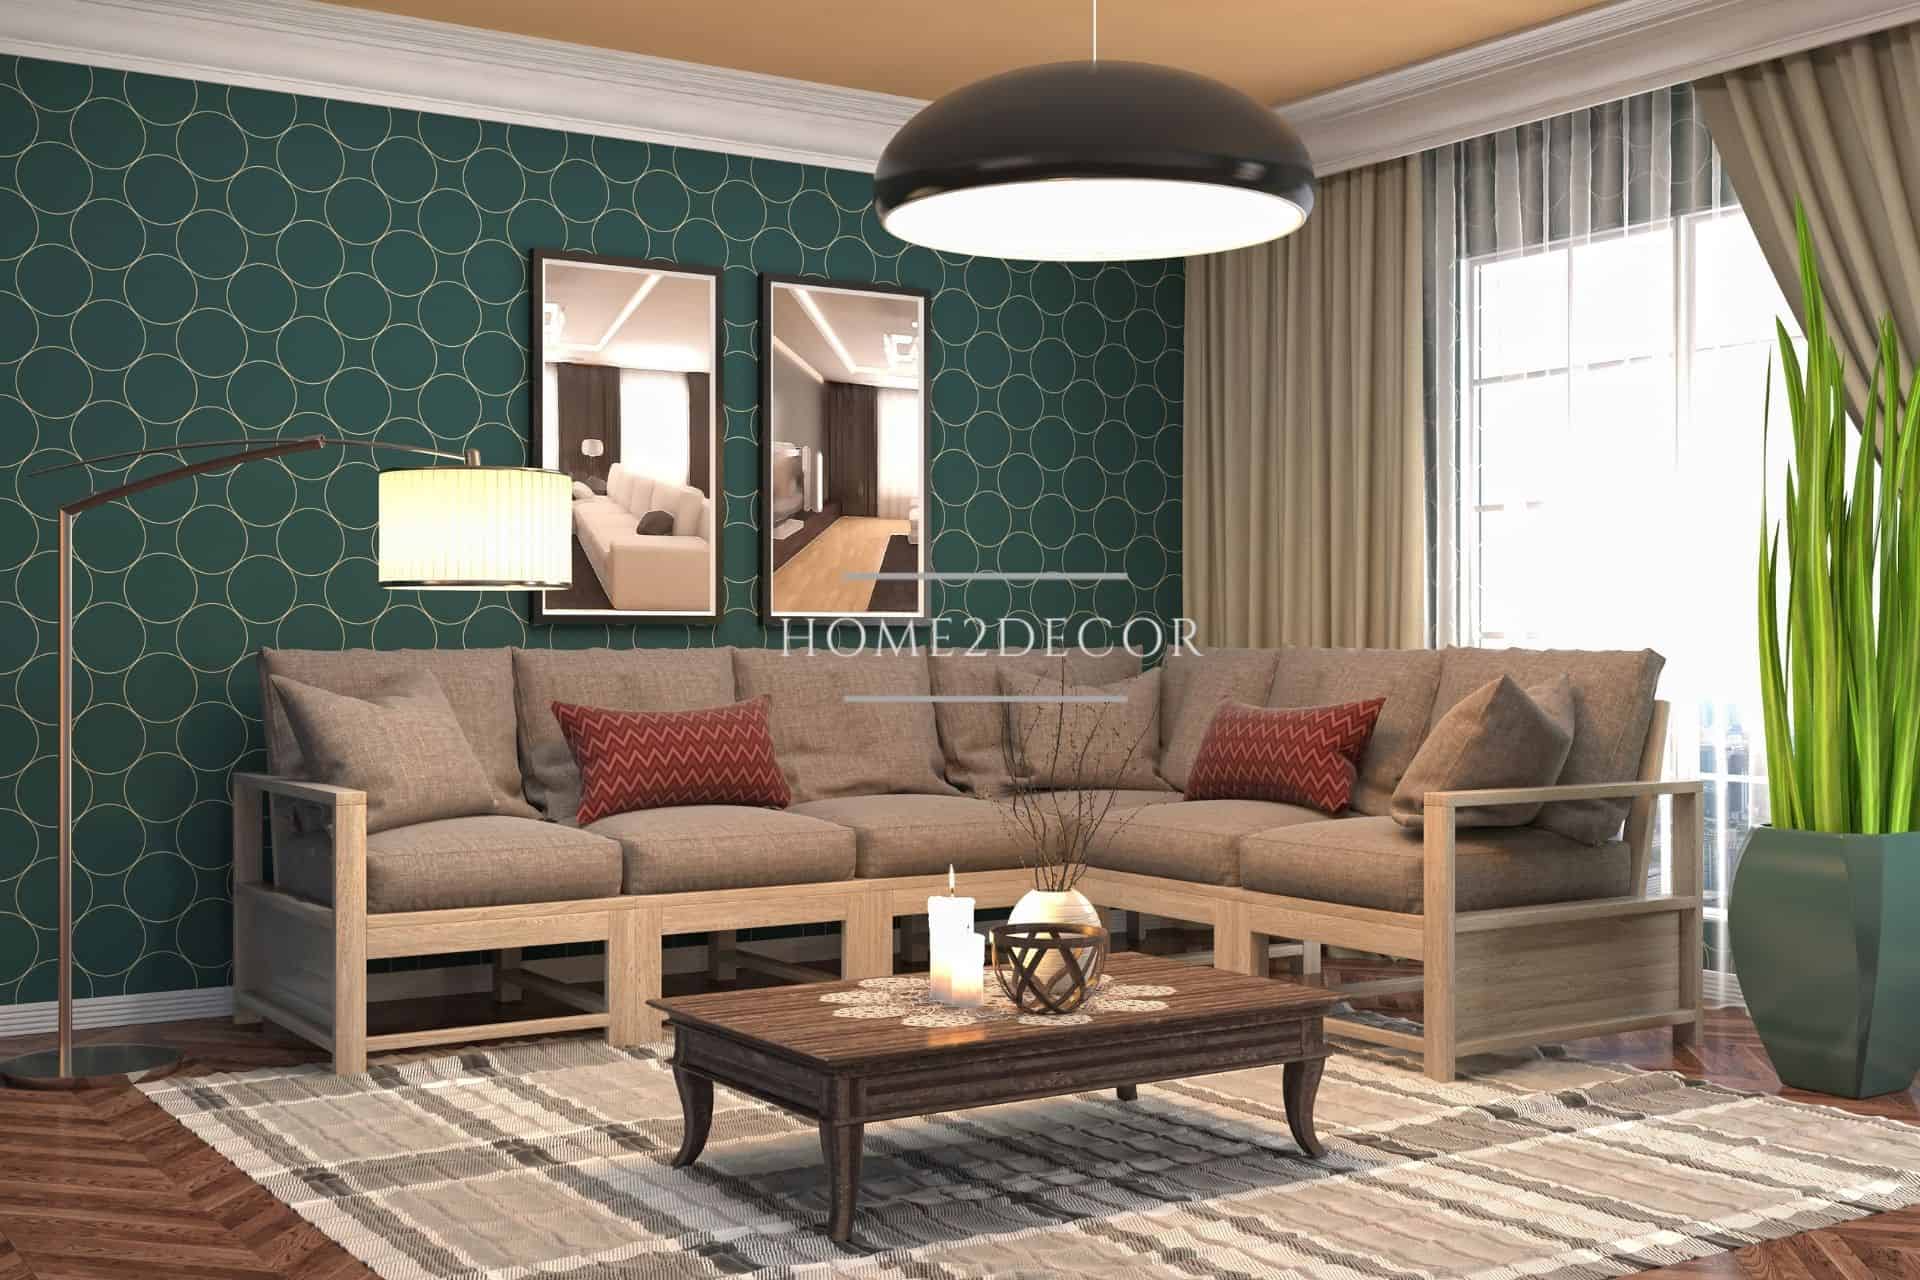 Modern lounger Seat Grey Sofa